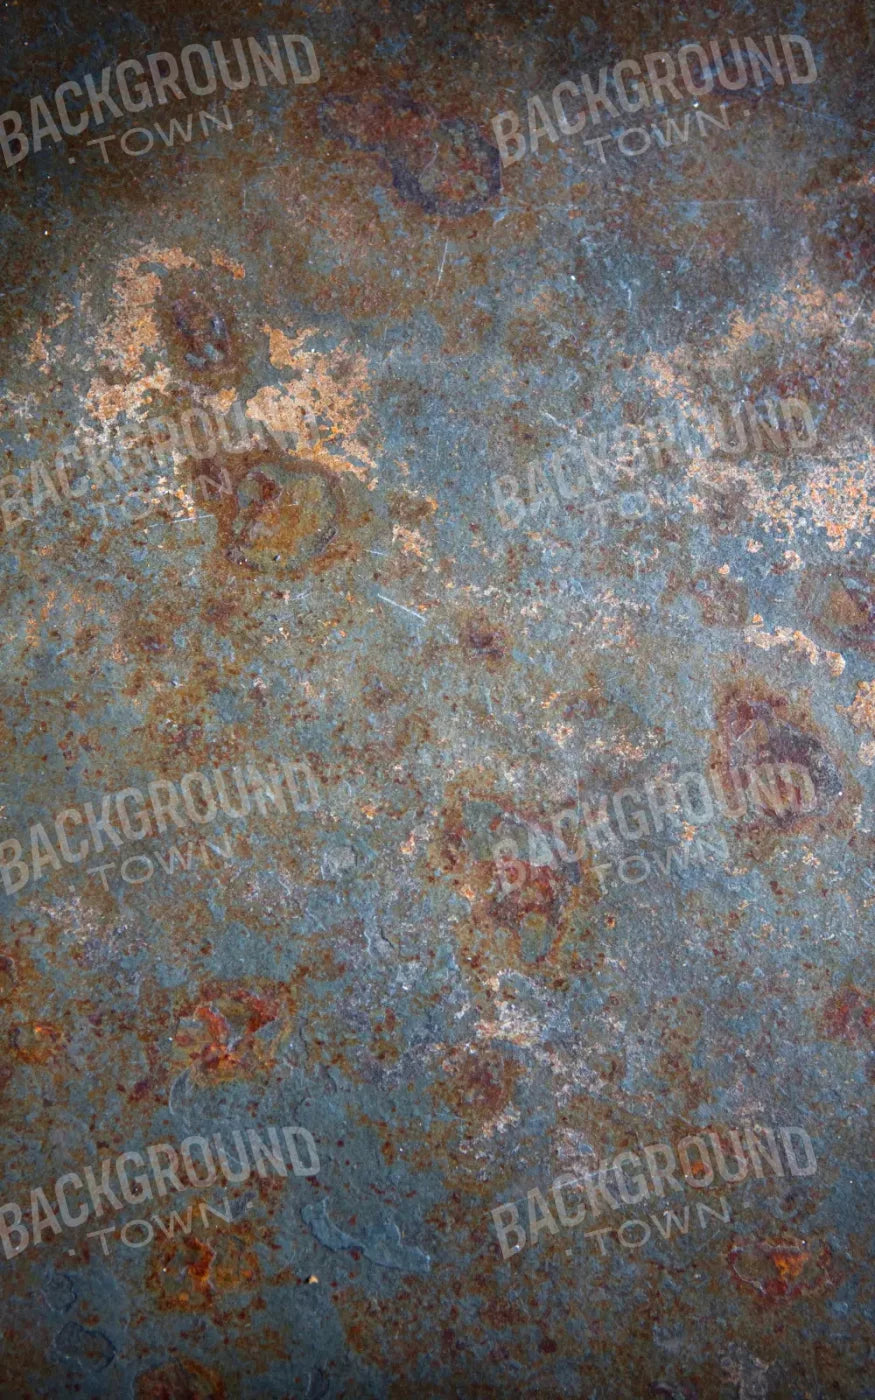 Blue Steel Floor 9X14 Ultracloth ( 108 X 168 Inch ) Backdrop